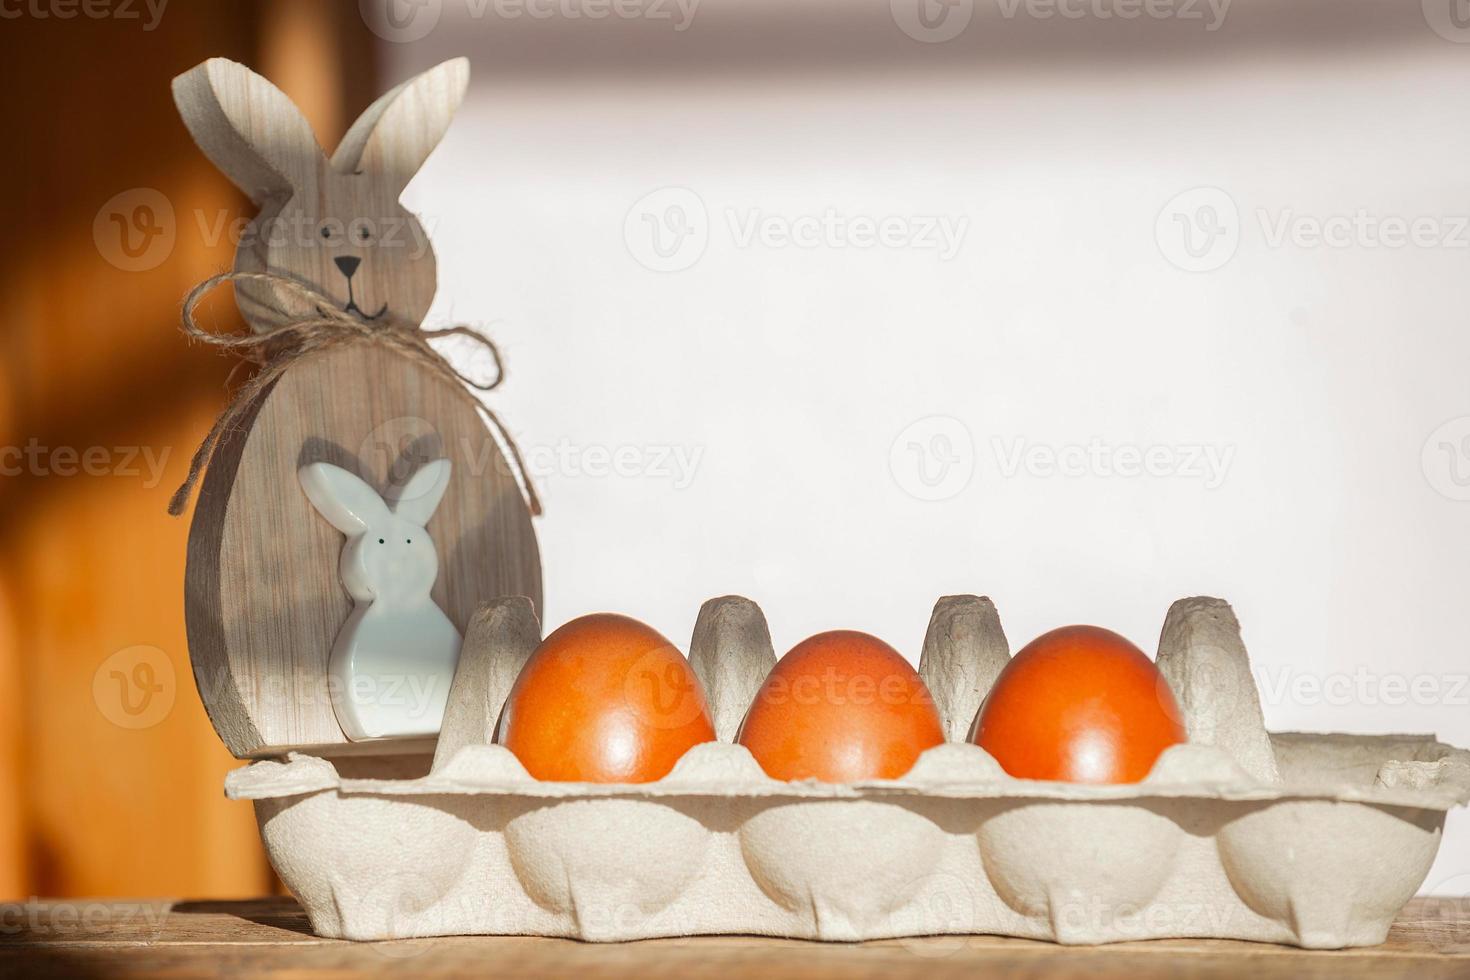 sobre un fondo de madera en un plato hay tres huevos rojos de pascua pintados con colores naturales y un conejo de pascua en los rayos del sol brillante, minimalismo, espacio de copia. preparándose para celebrar la pascua foto